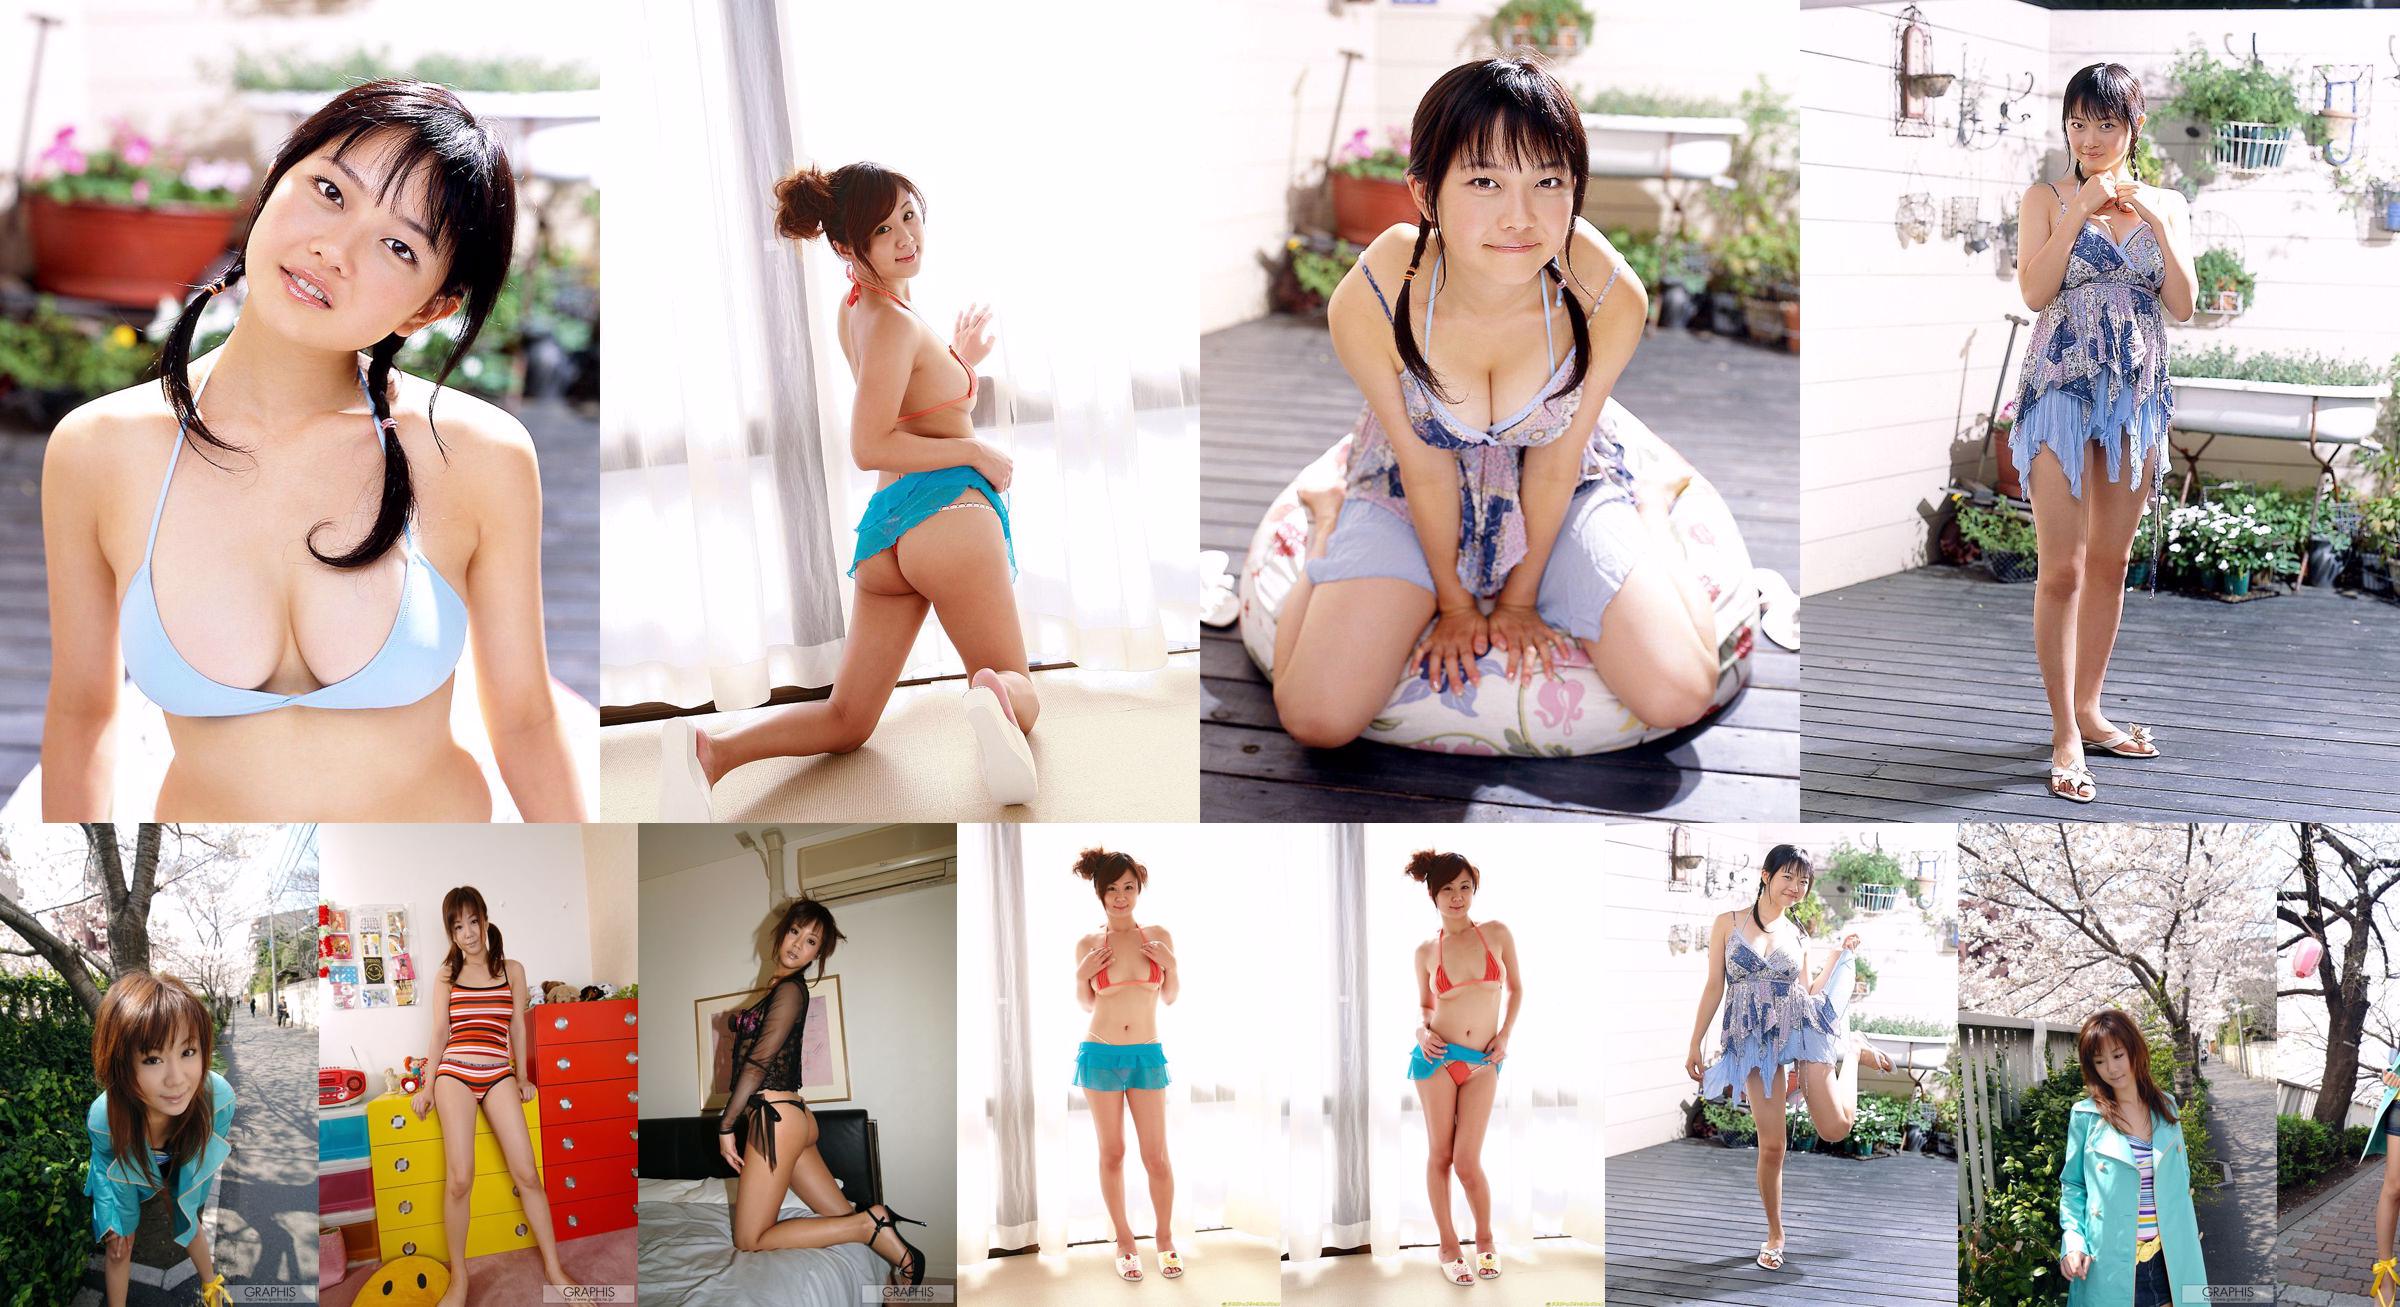 Maki Hoshino / Maki Hoshino "Juicy" [Graphis] Gals No.3e9a5f Halaman 8